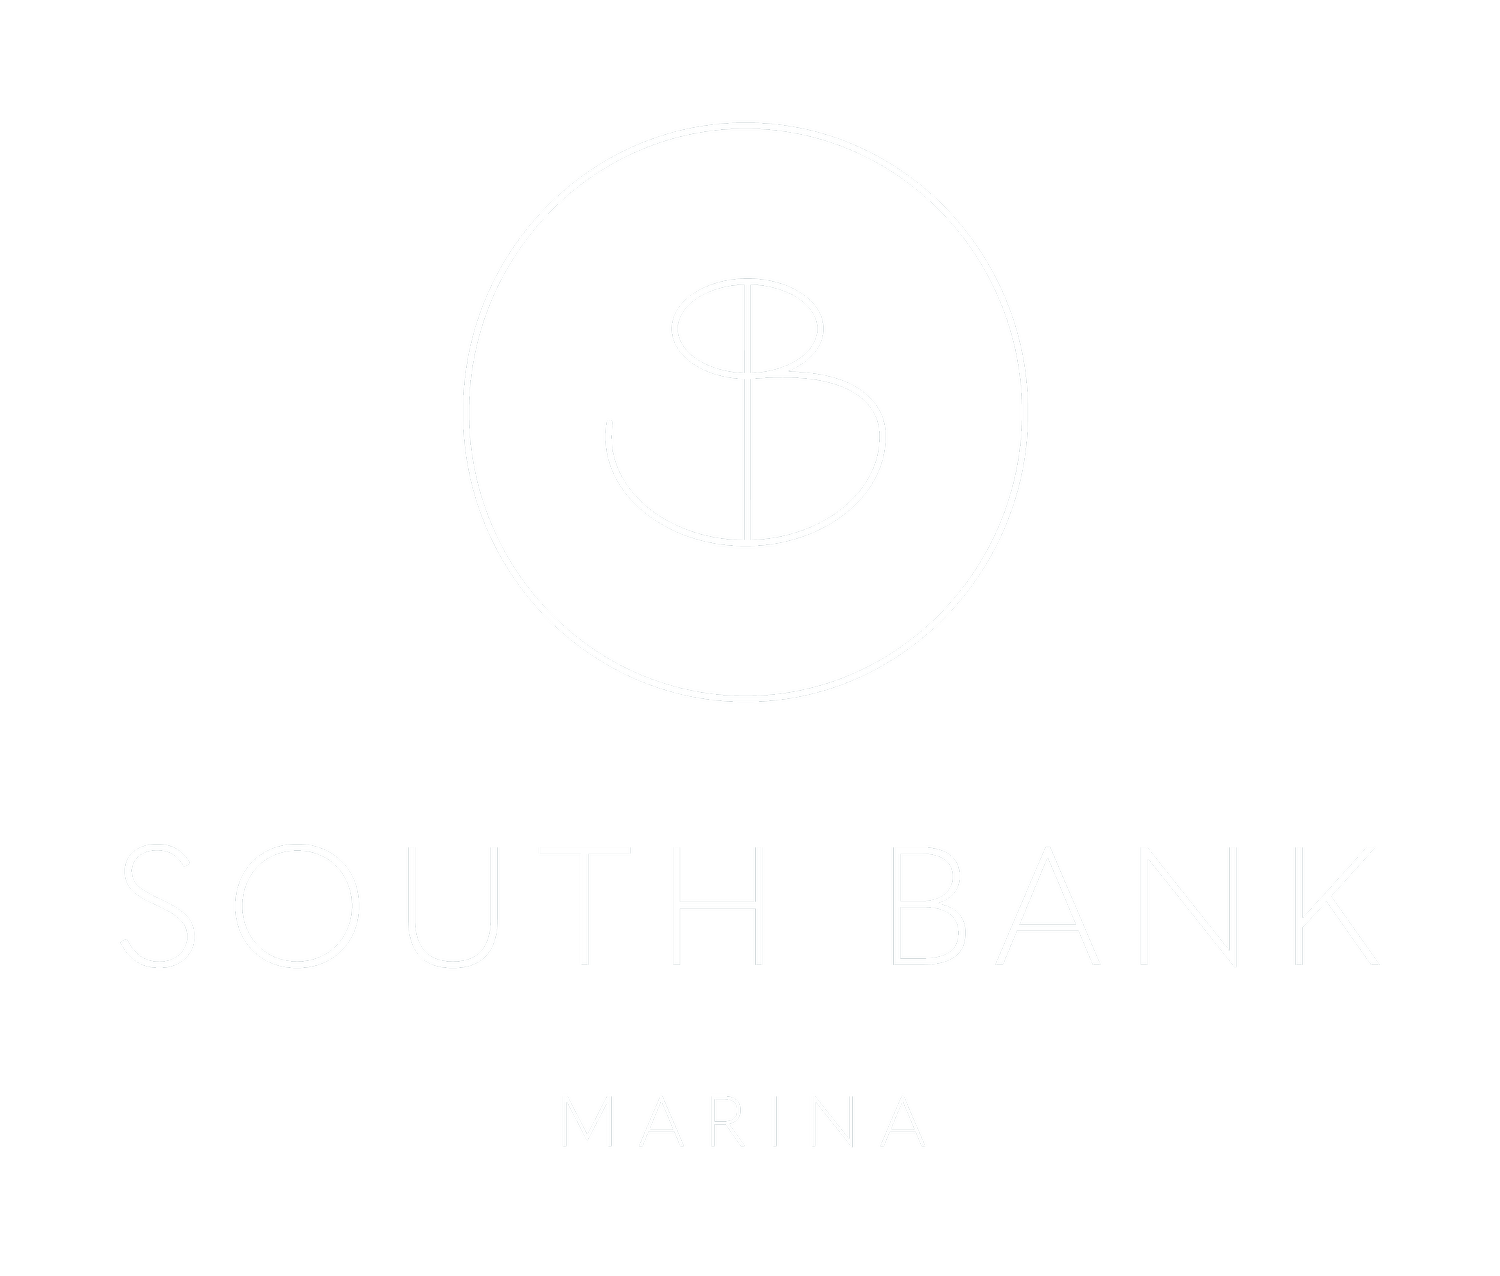 The Marina at Southbank